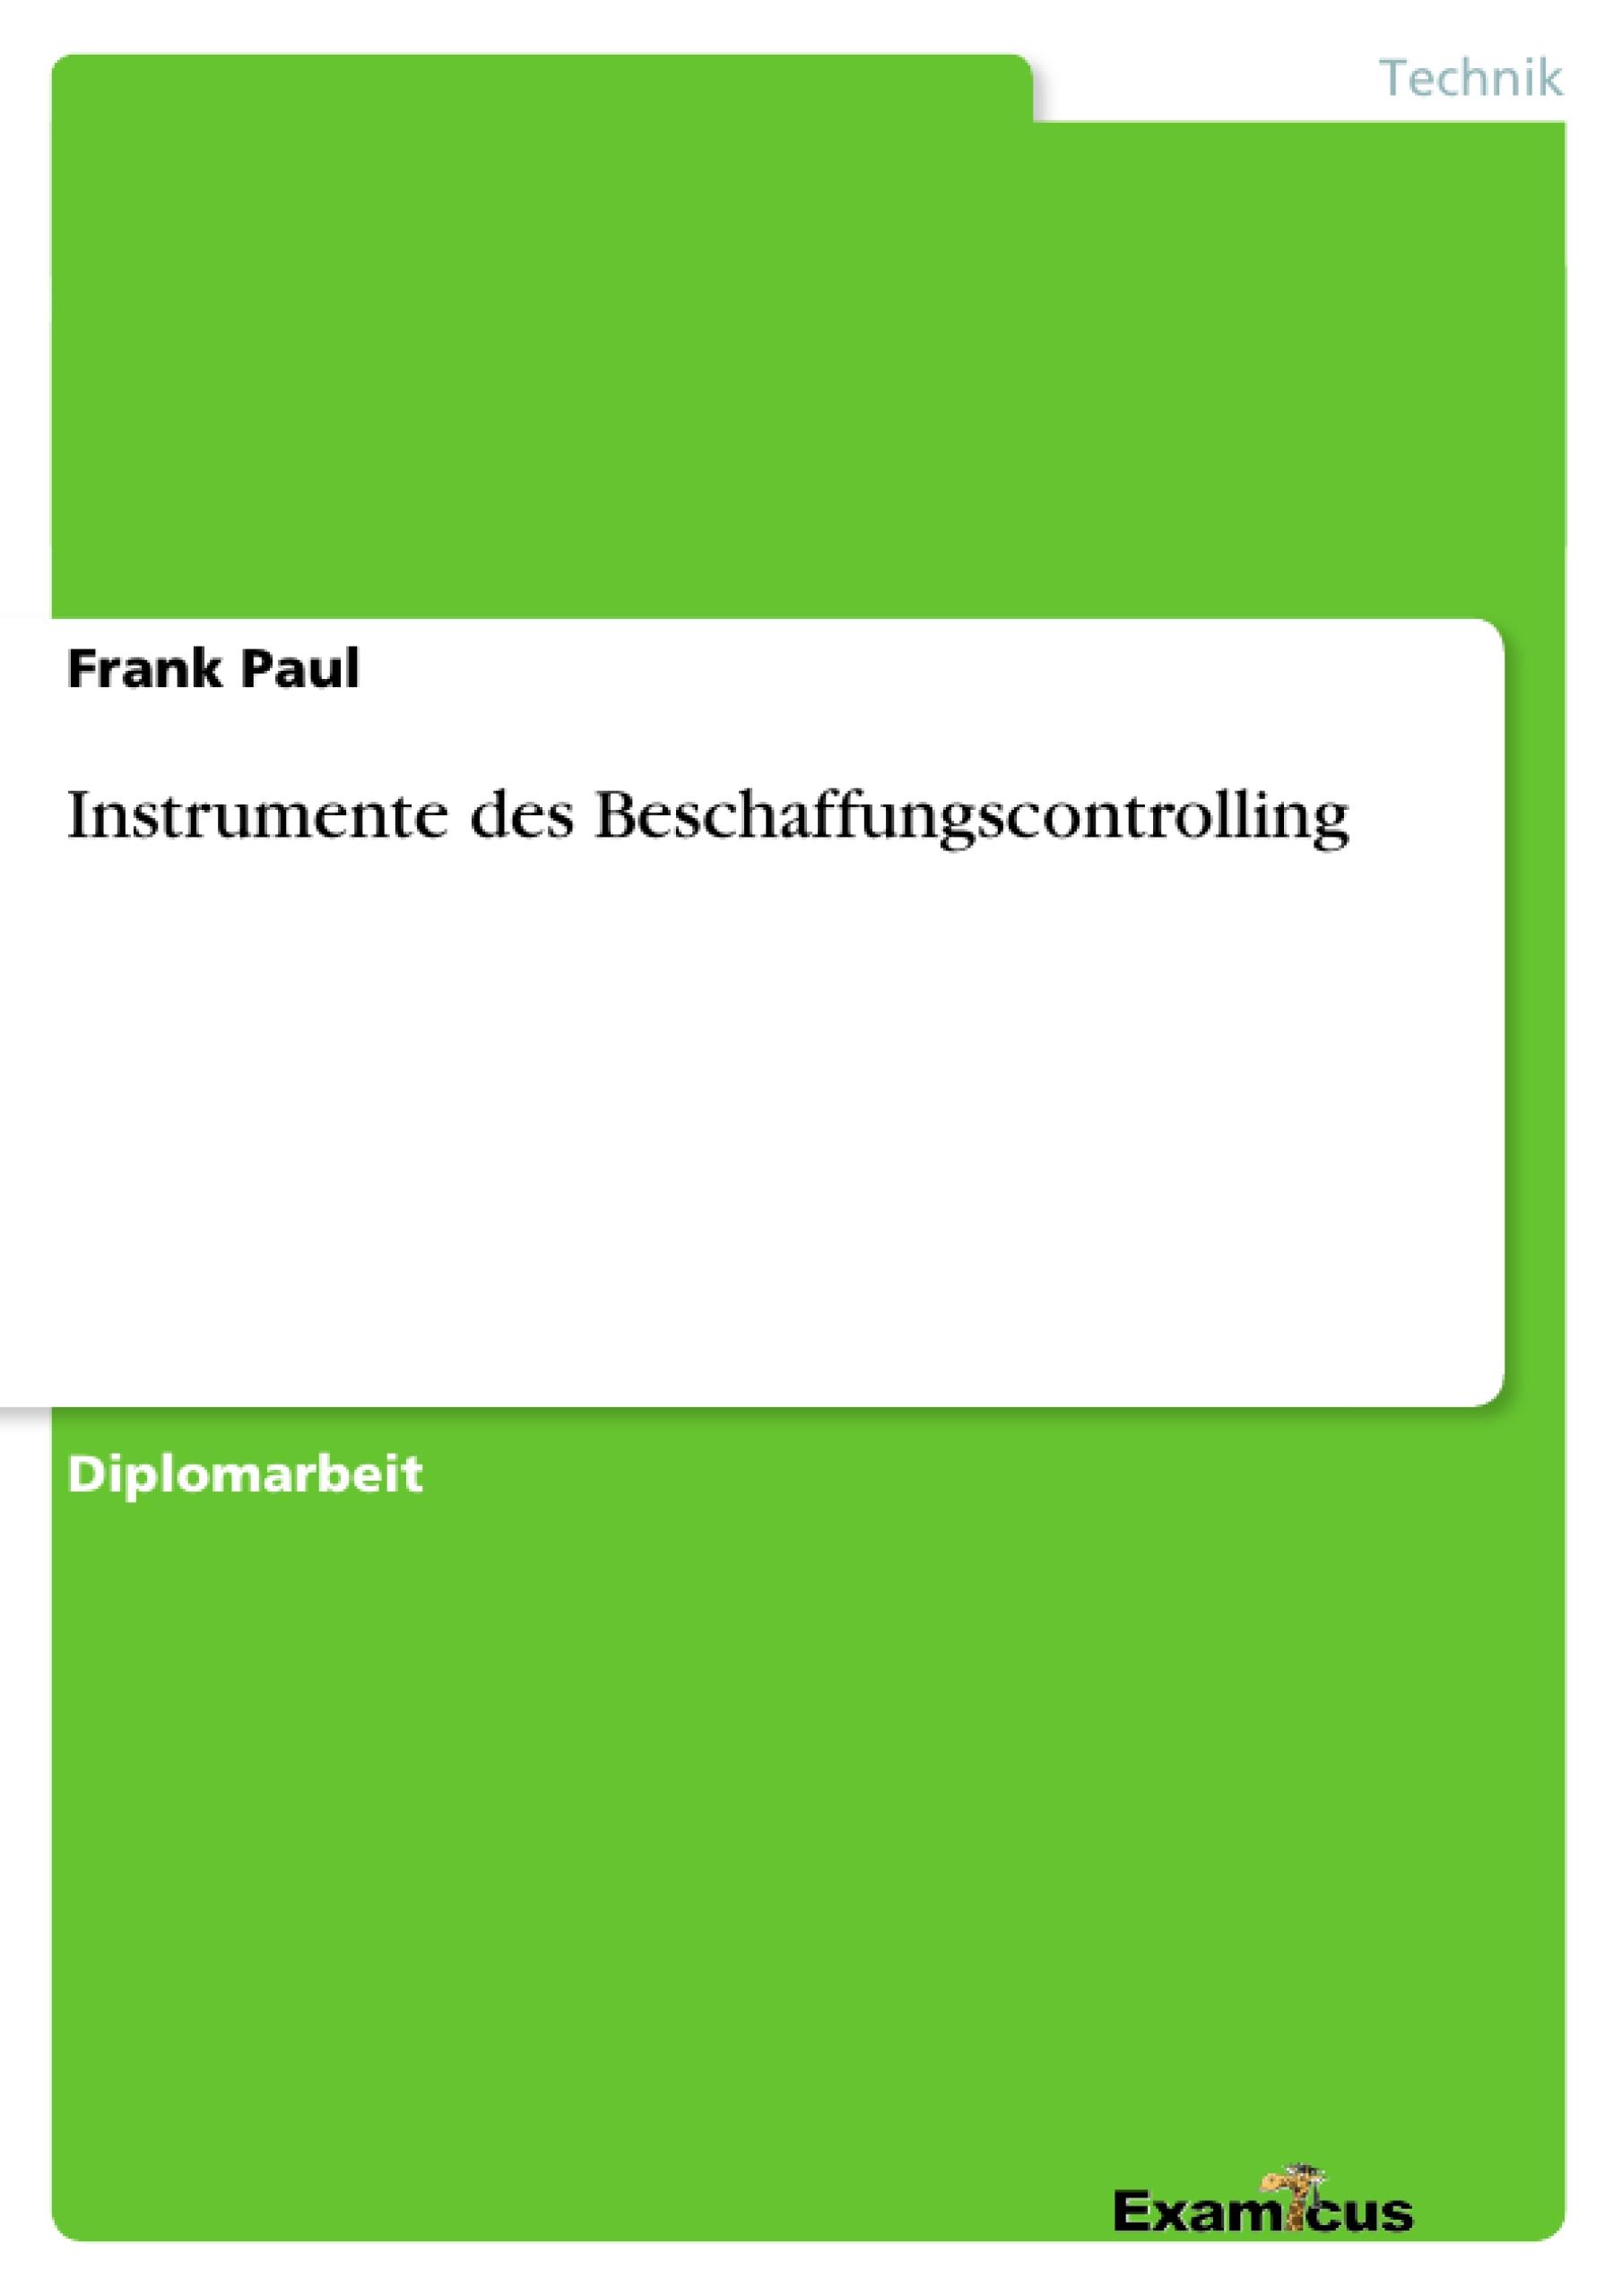 Instrumente des Beschaffungscontrolling - Paul, Frank